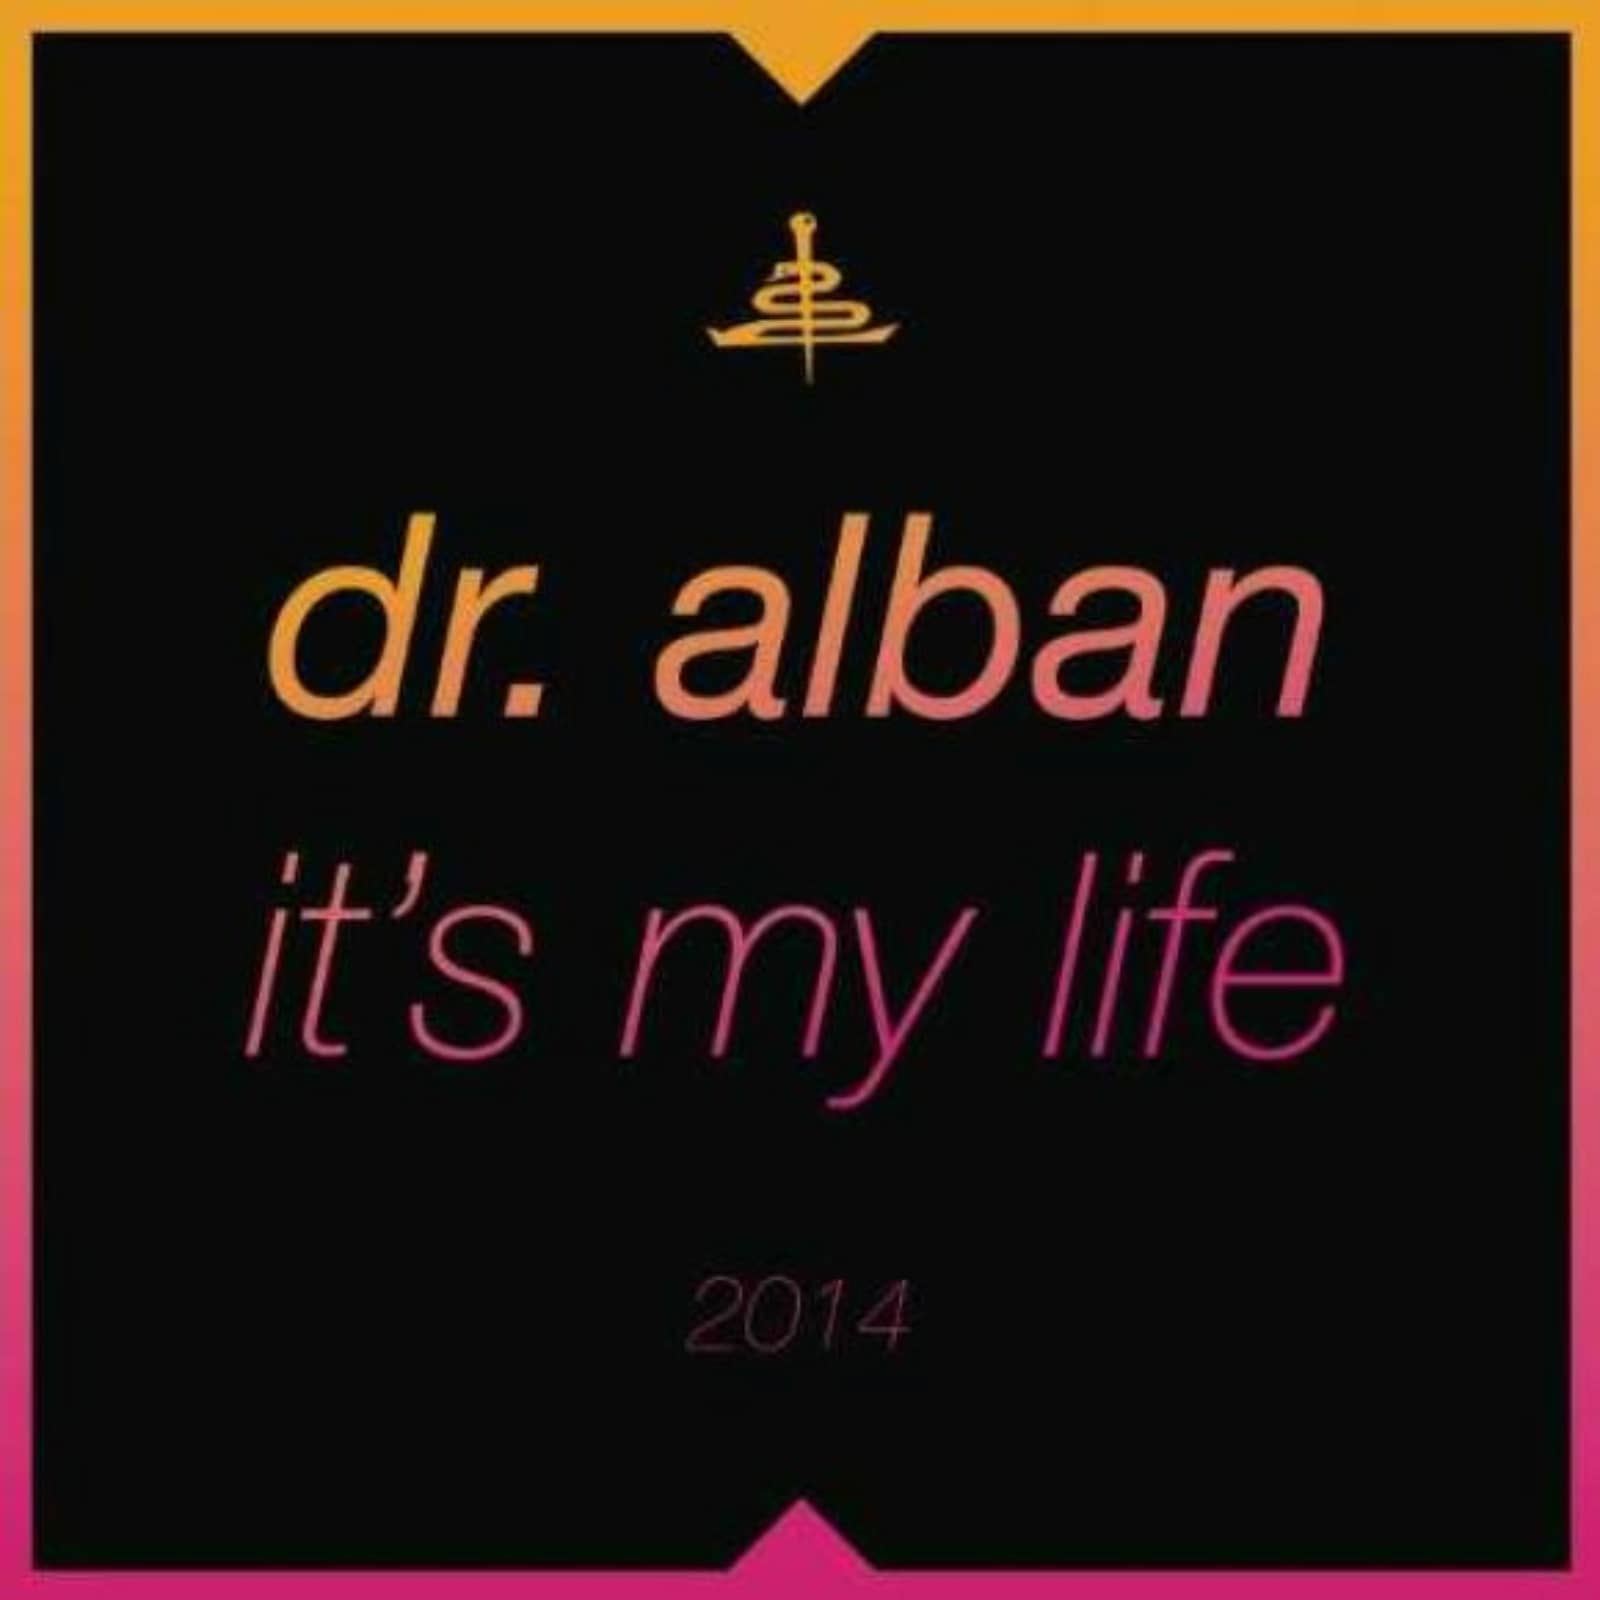 Албан итс май лайф ремикс. Доктор албан ИТС май Life. Dr Alban - it´s my Life. Dr. Alban - its my Life 2014 (Bodybangers Remix). Dr. Alban - it's my Life обложка.